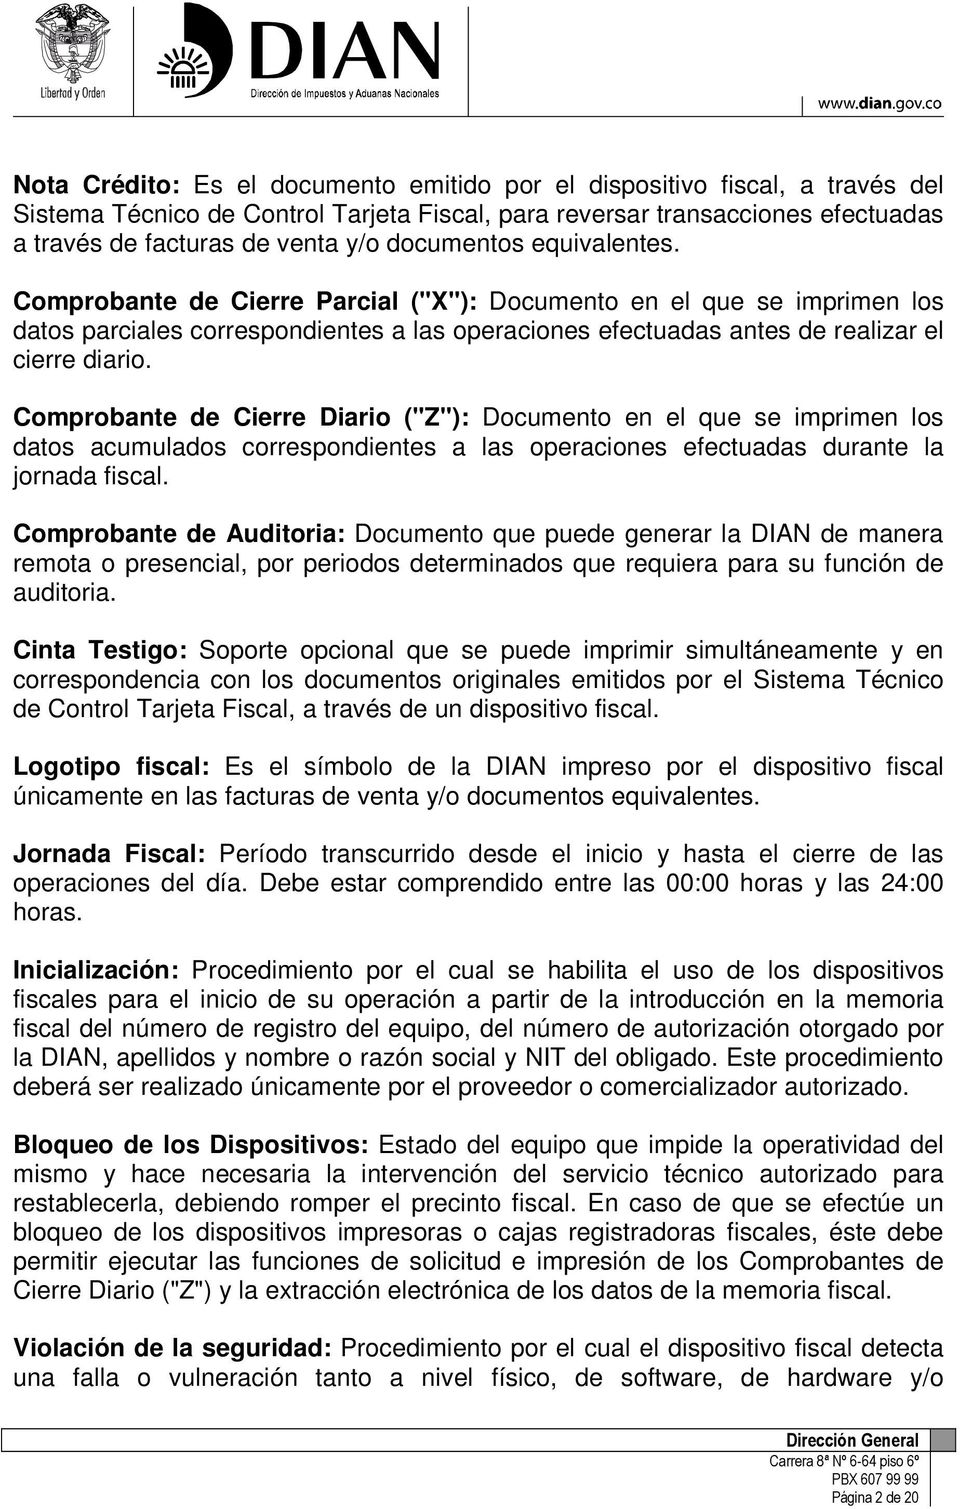 Comprobante de Cierre Diario ("Z"): Documento en el que se imprimen los datos acumulados correspondientes a las operaciones efectuadas durante la jornada fiscal.